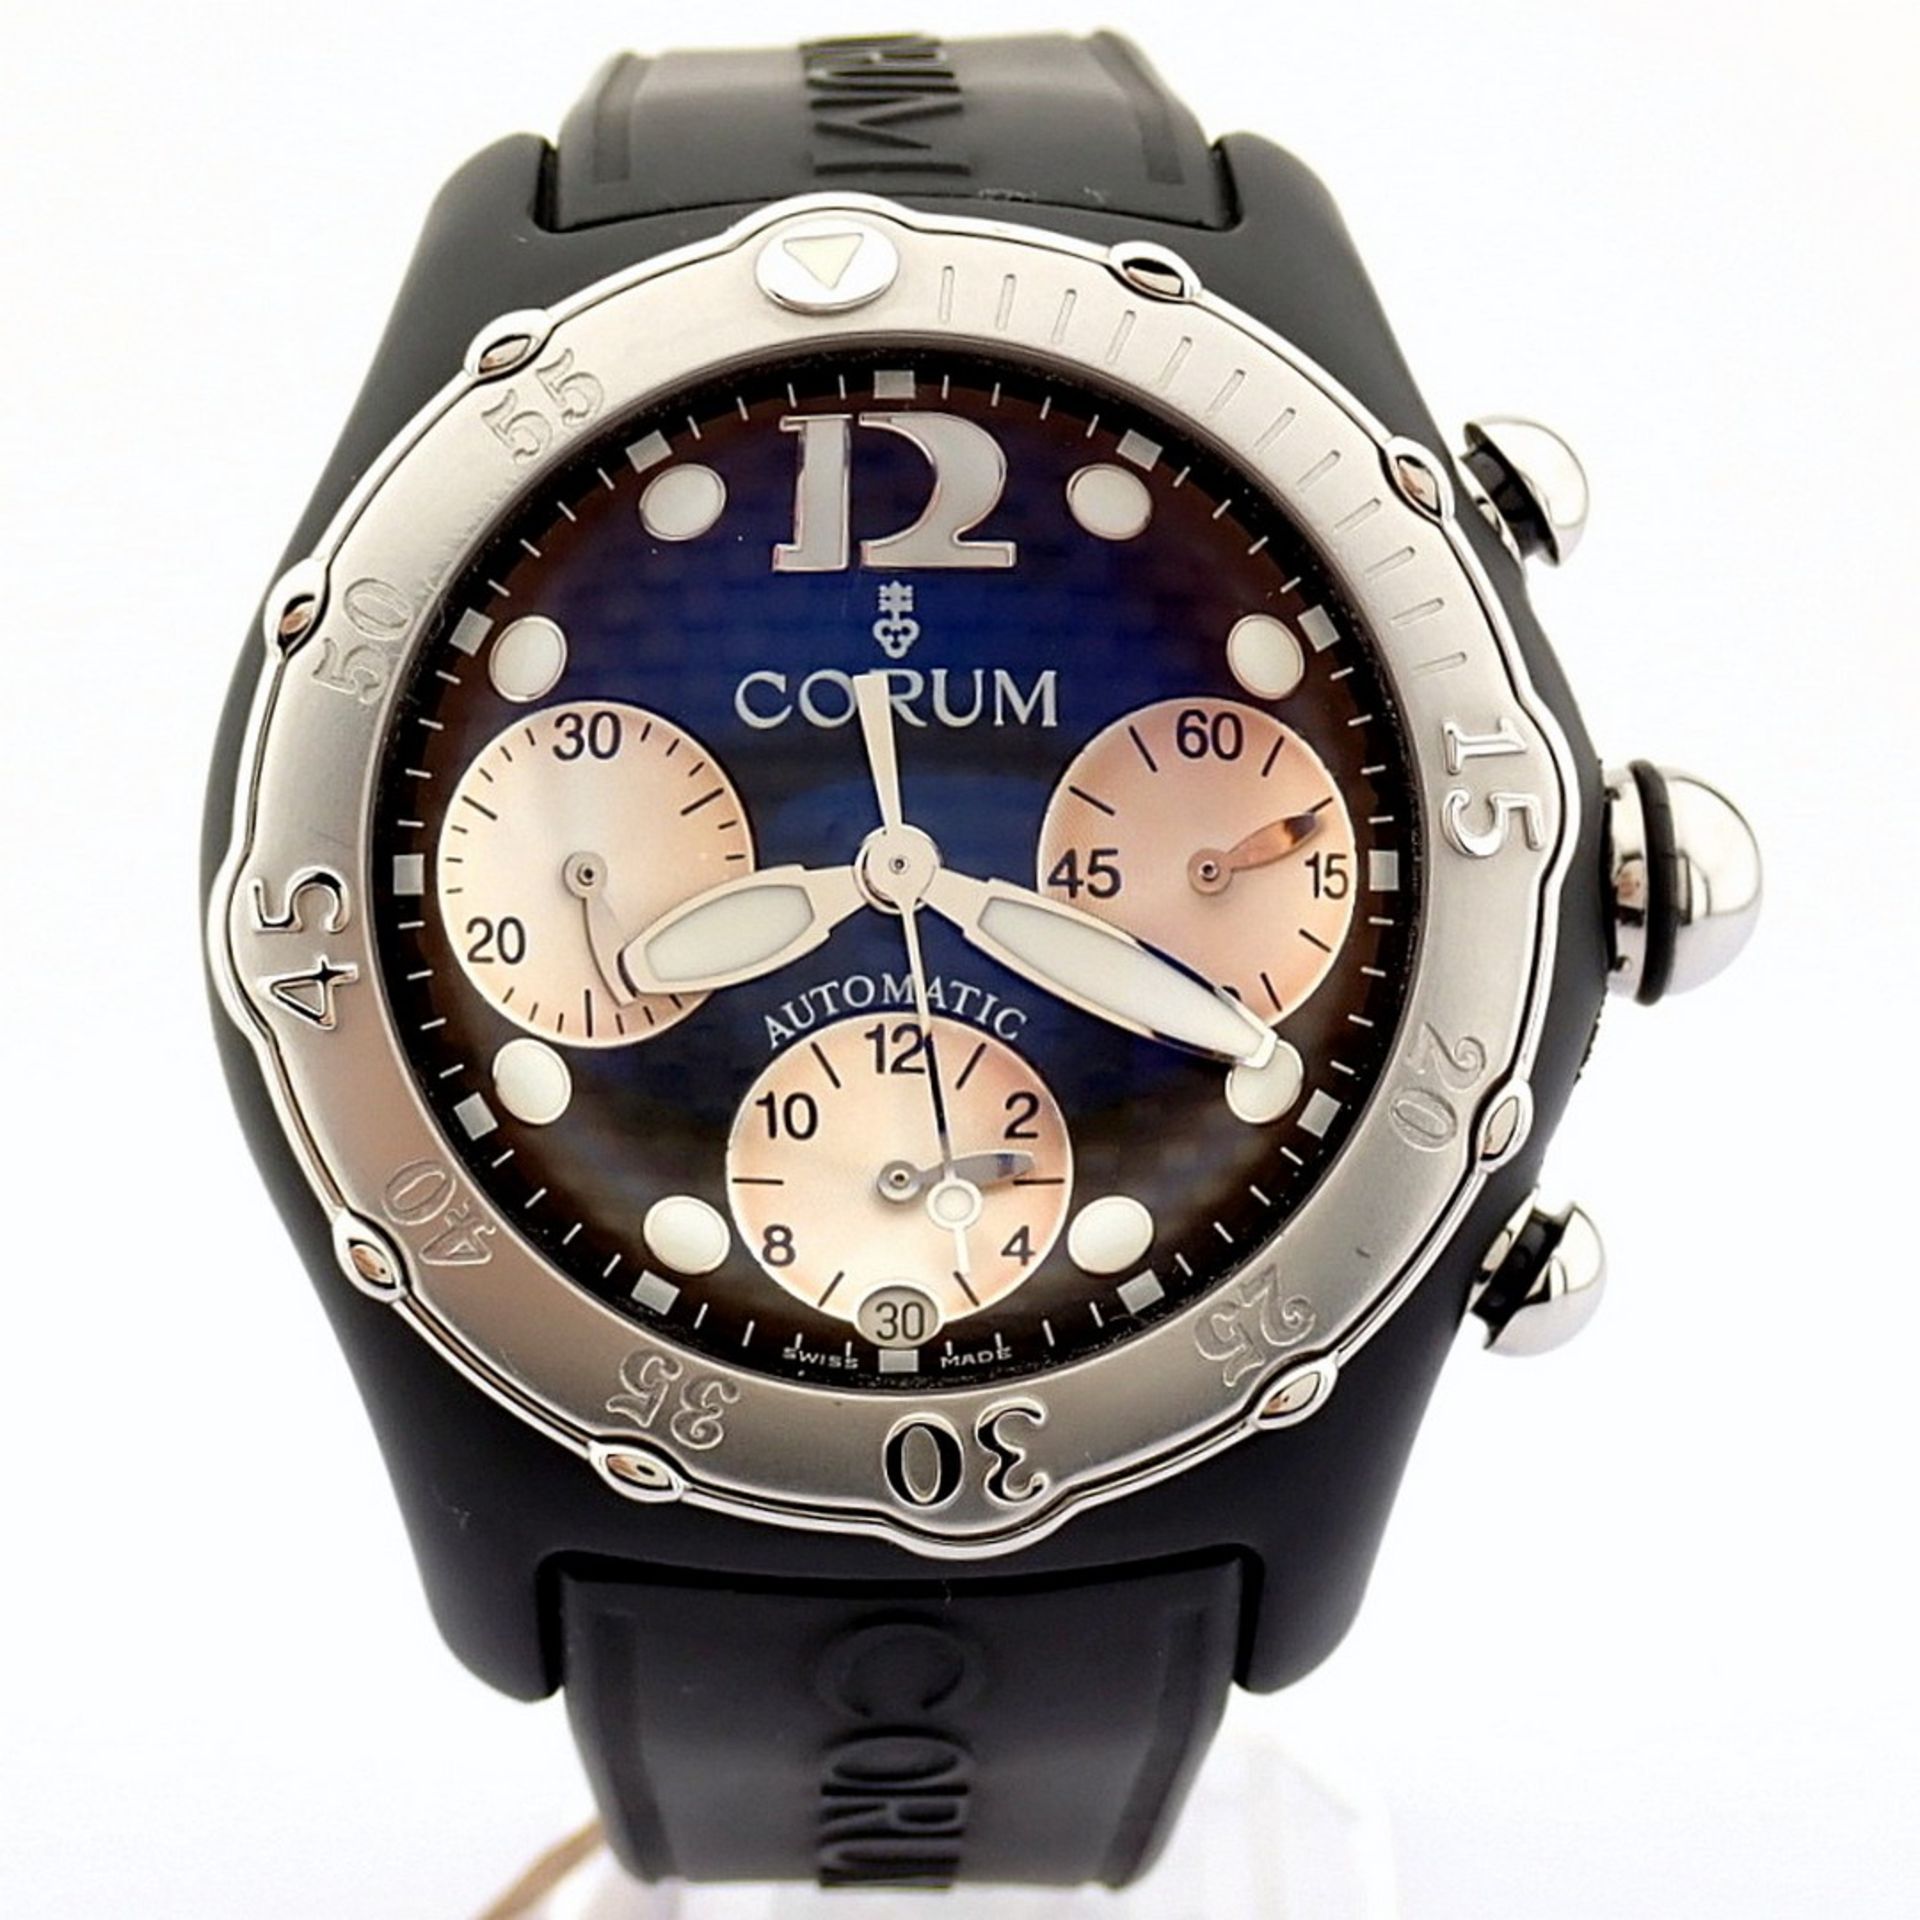 Corum / Midnight Chronograph Diver Taucher - Gentlemen's Steel Wristwatch - Image 6 of 12